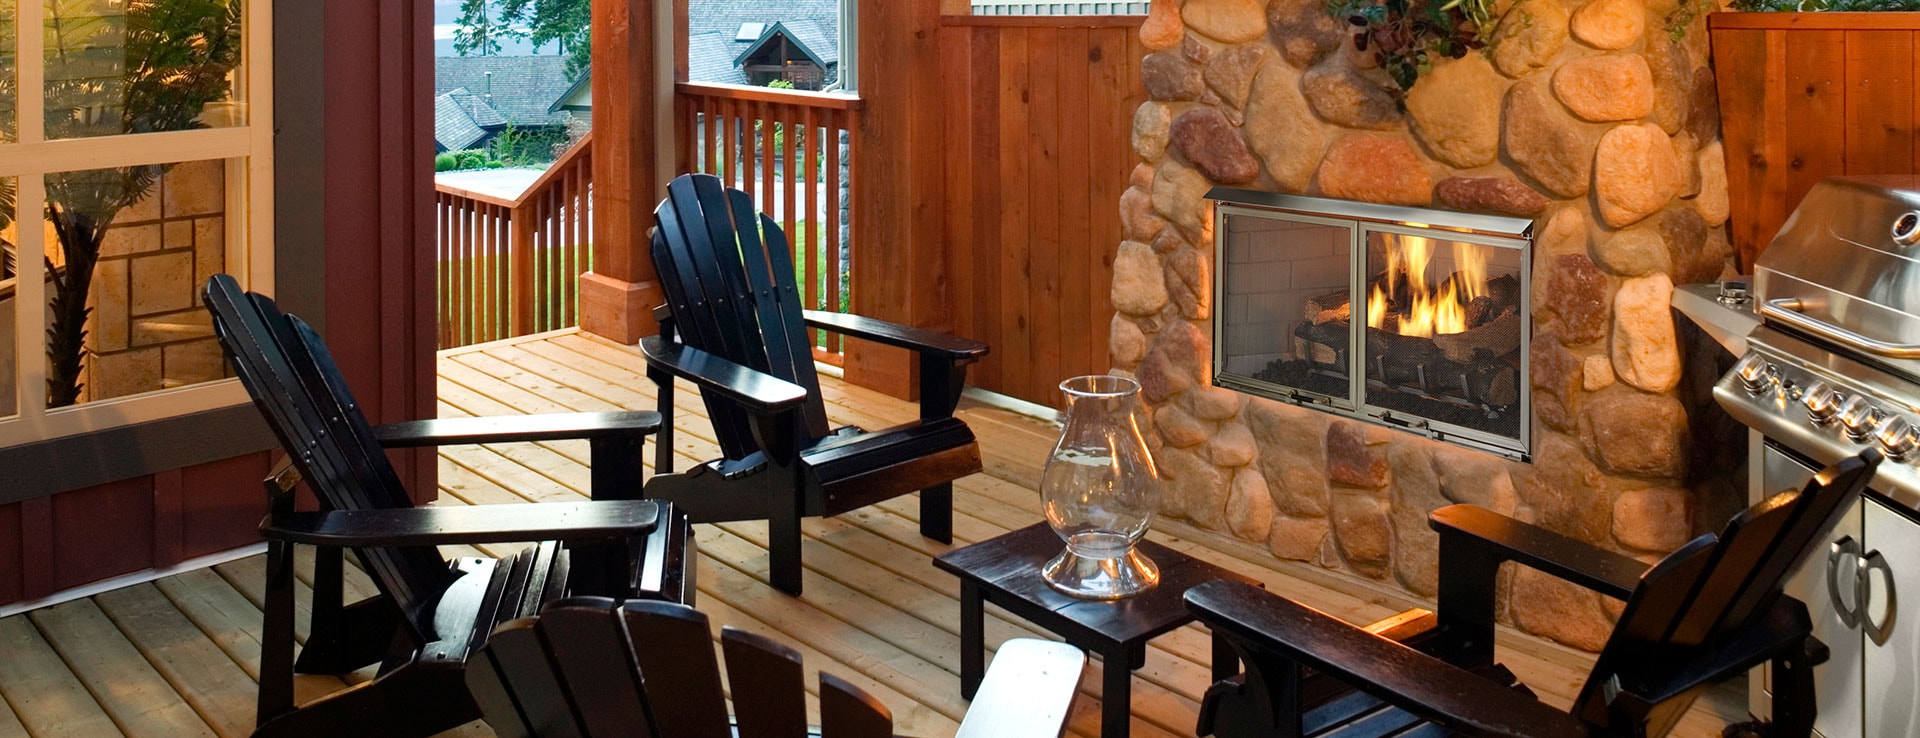 Heatilator Fireplace Doors Inspirational Villa Gas Stainless Steel Outdoor Fireplace